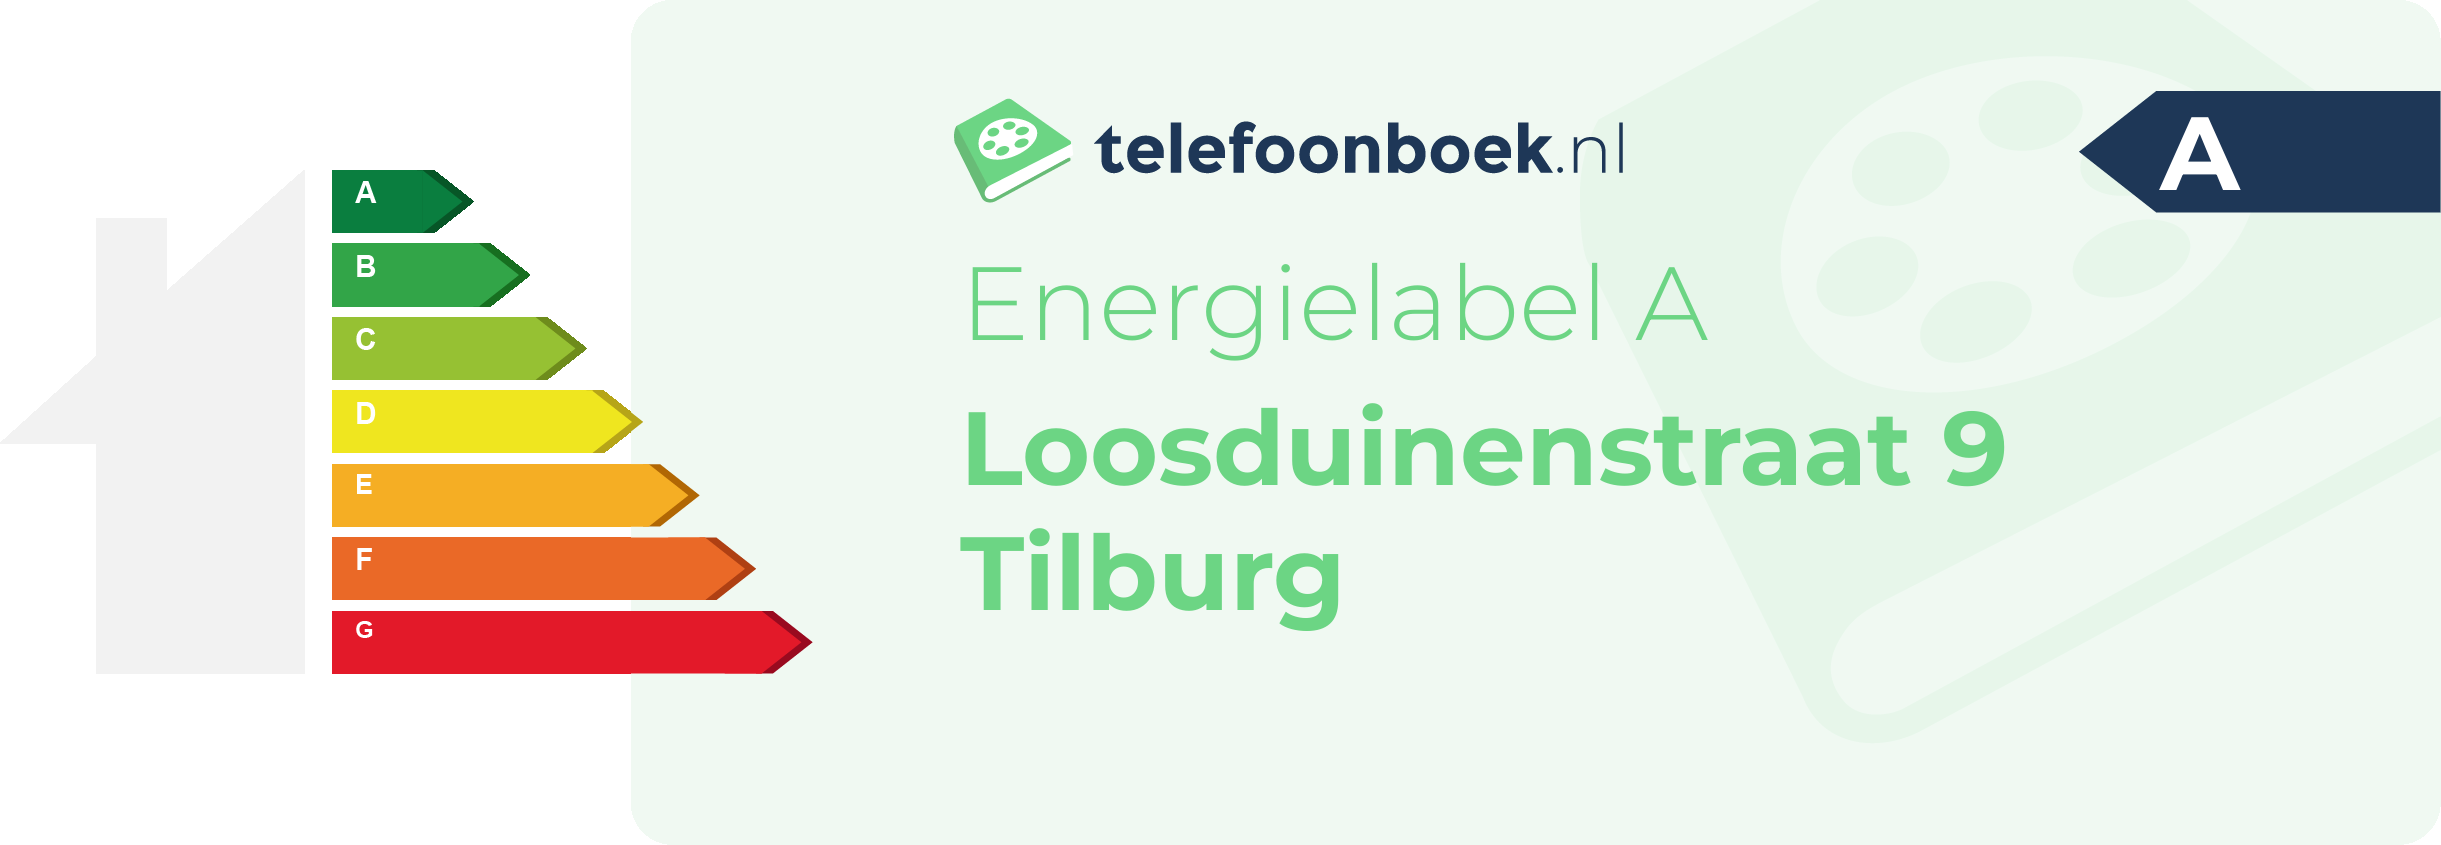 Energielabel Loosduinenstraat 9 Tilburg